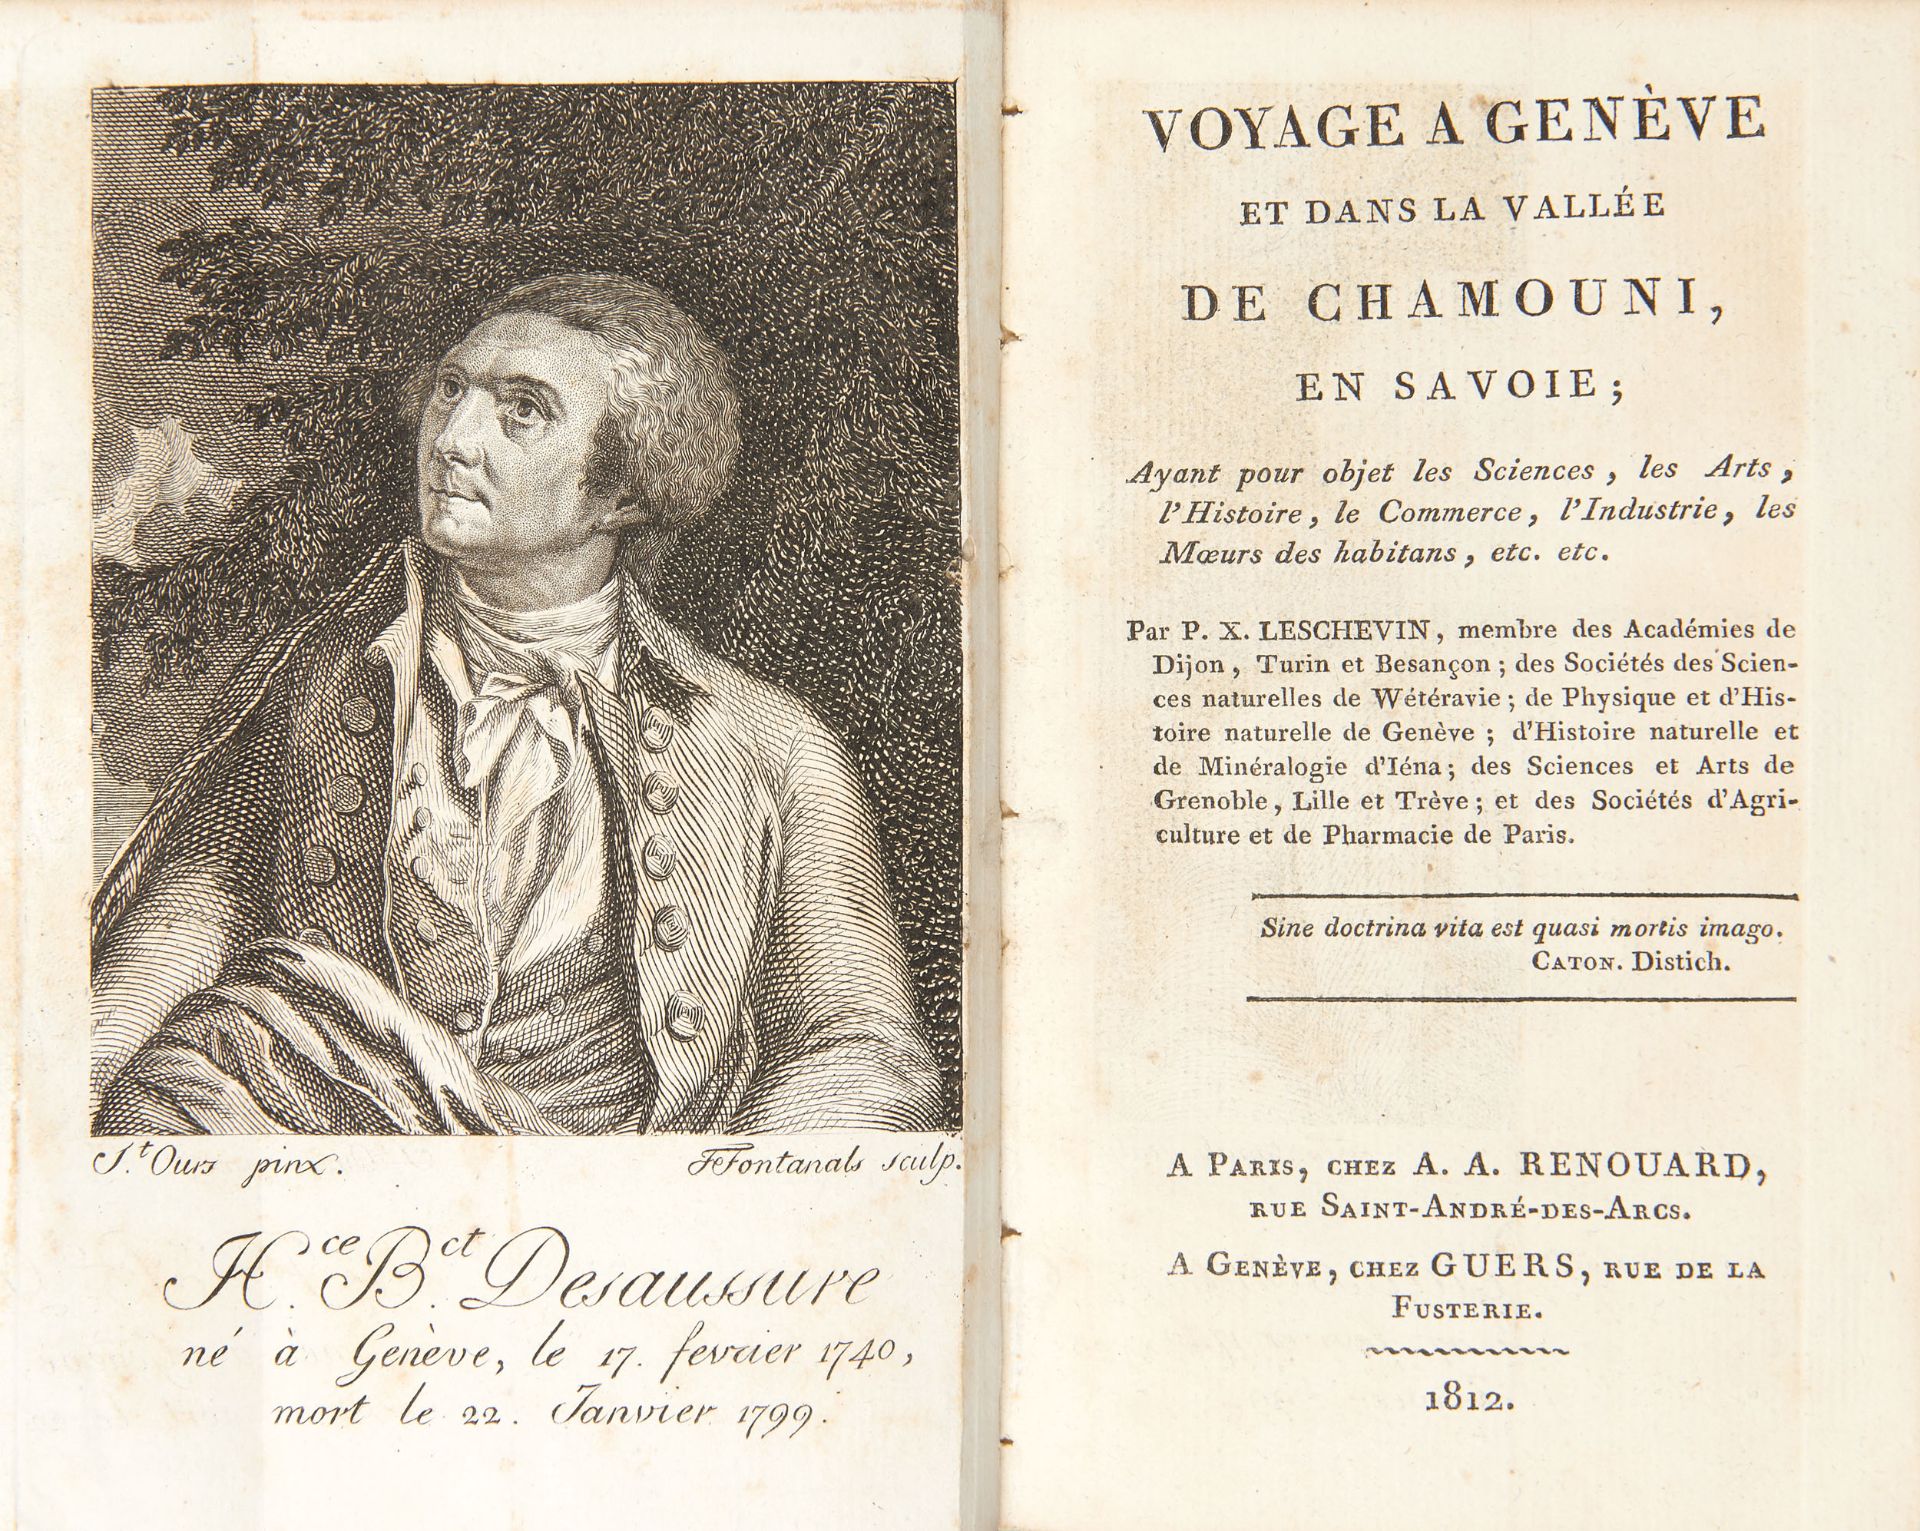 [ALPI] LESCHEVIN, Philippe-Xavier (1771-1814). Voyage a Gen?ve et dans la vallée de Chamouni, en